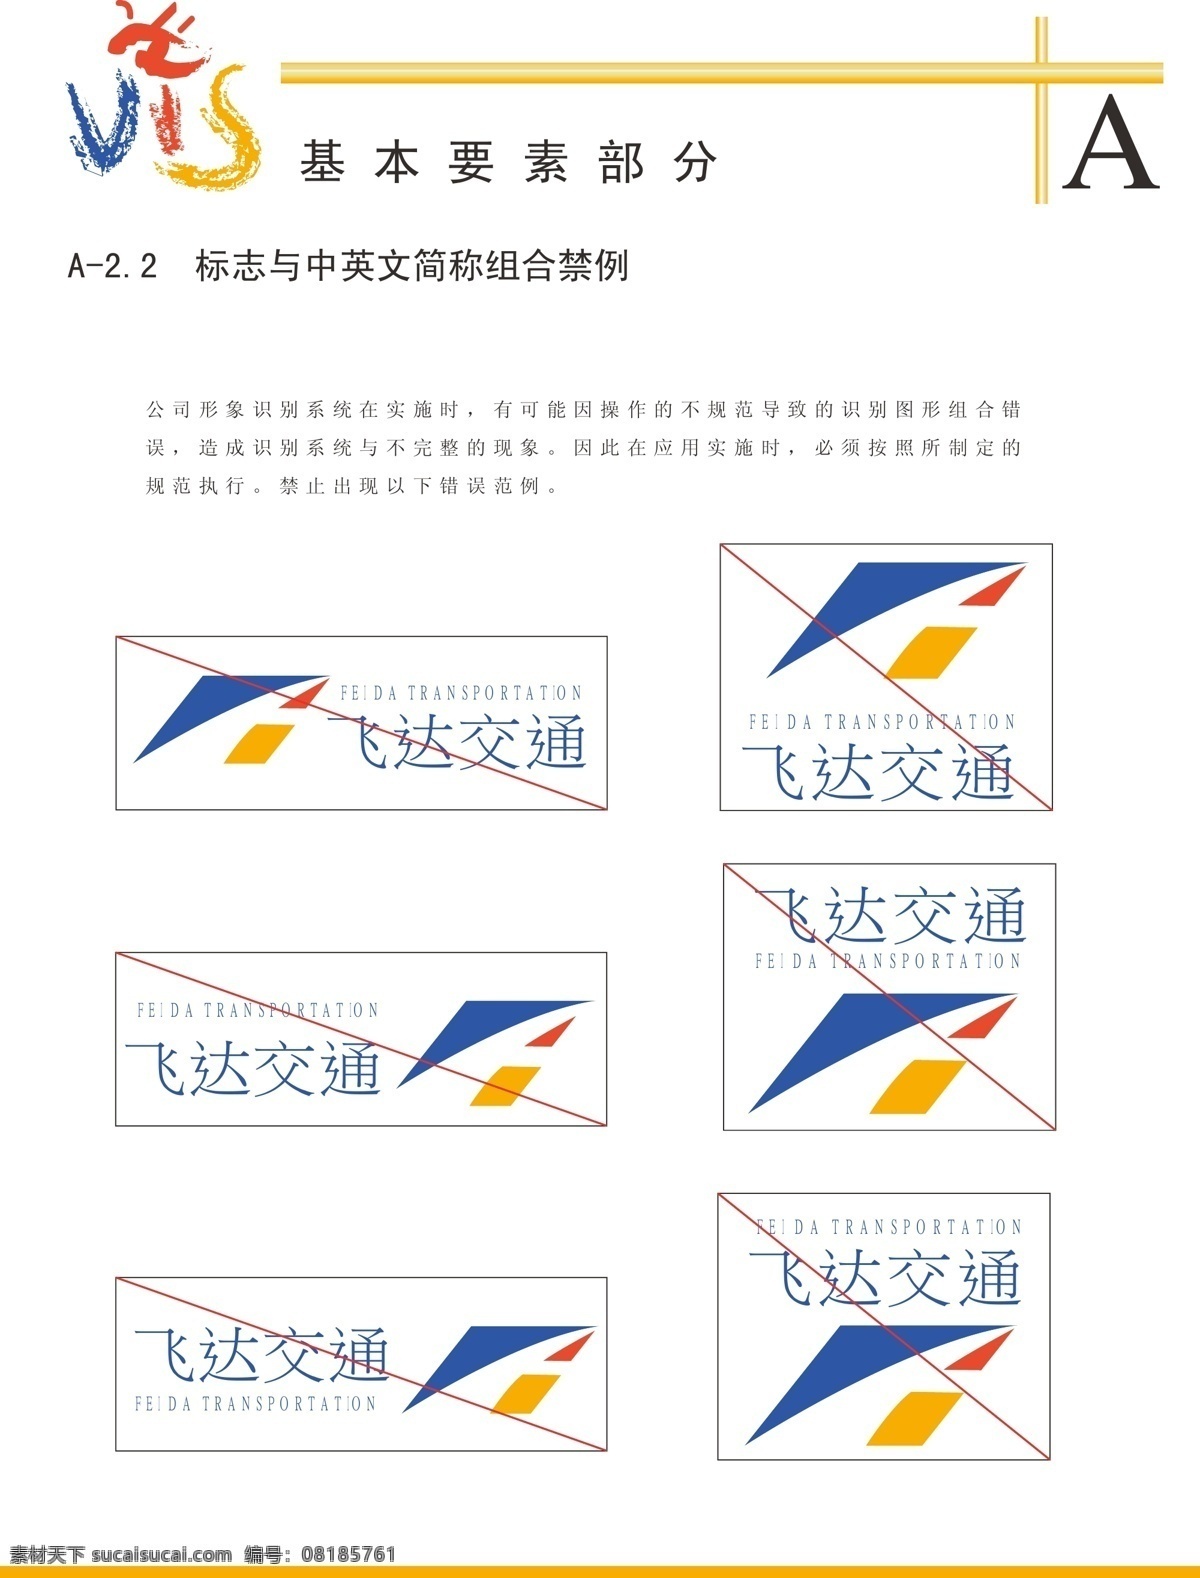 标志 中文 简体 组合 禁忌 vis vi模板 经典vis 企业形象设计 飞达 交通建设 公司 海报 其他海报设计